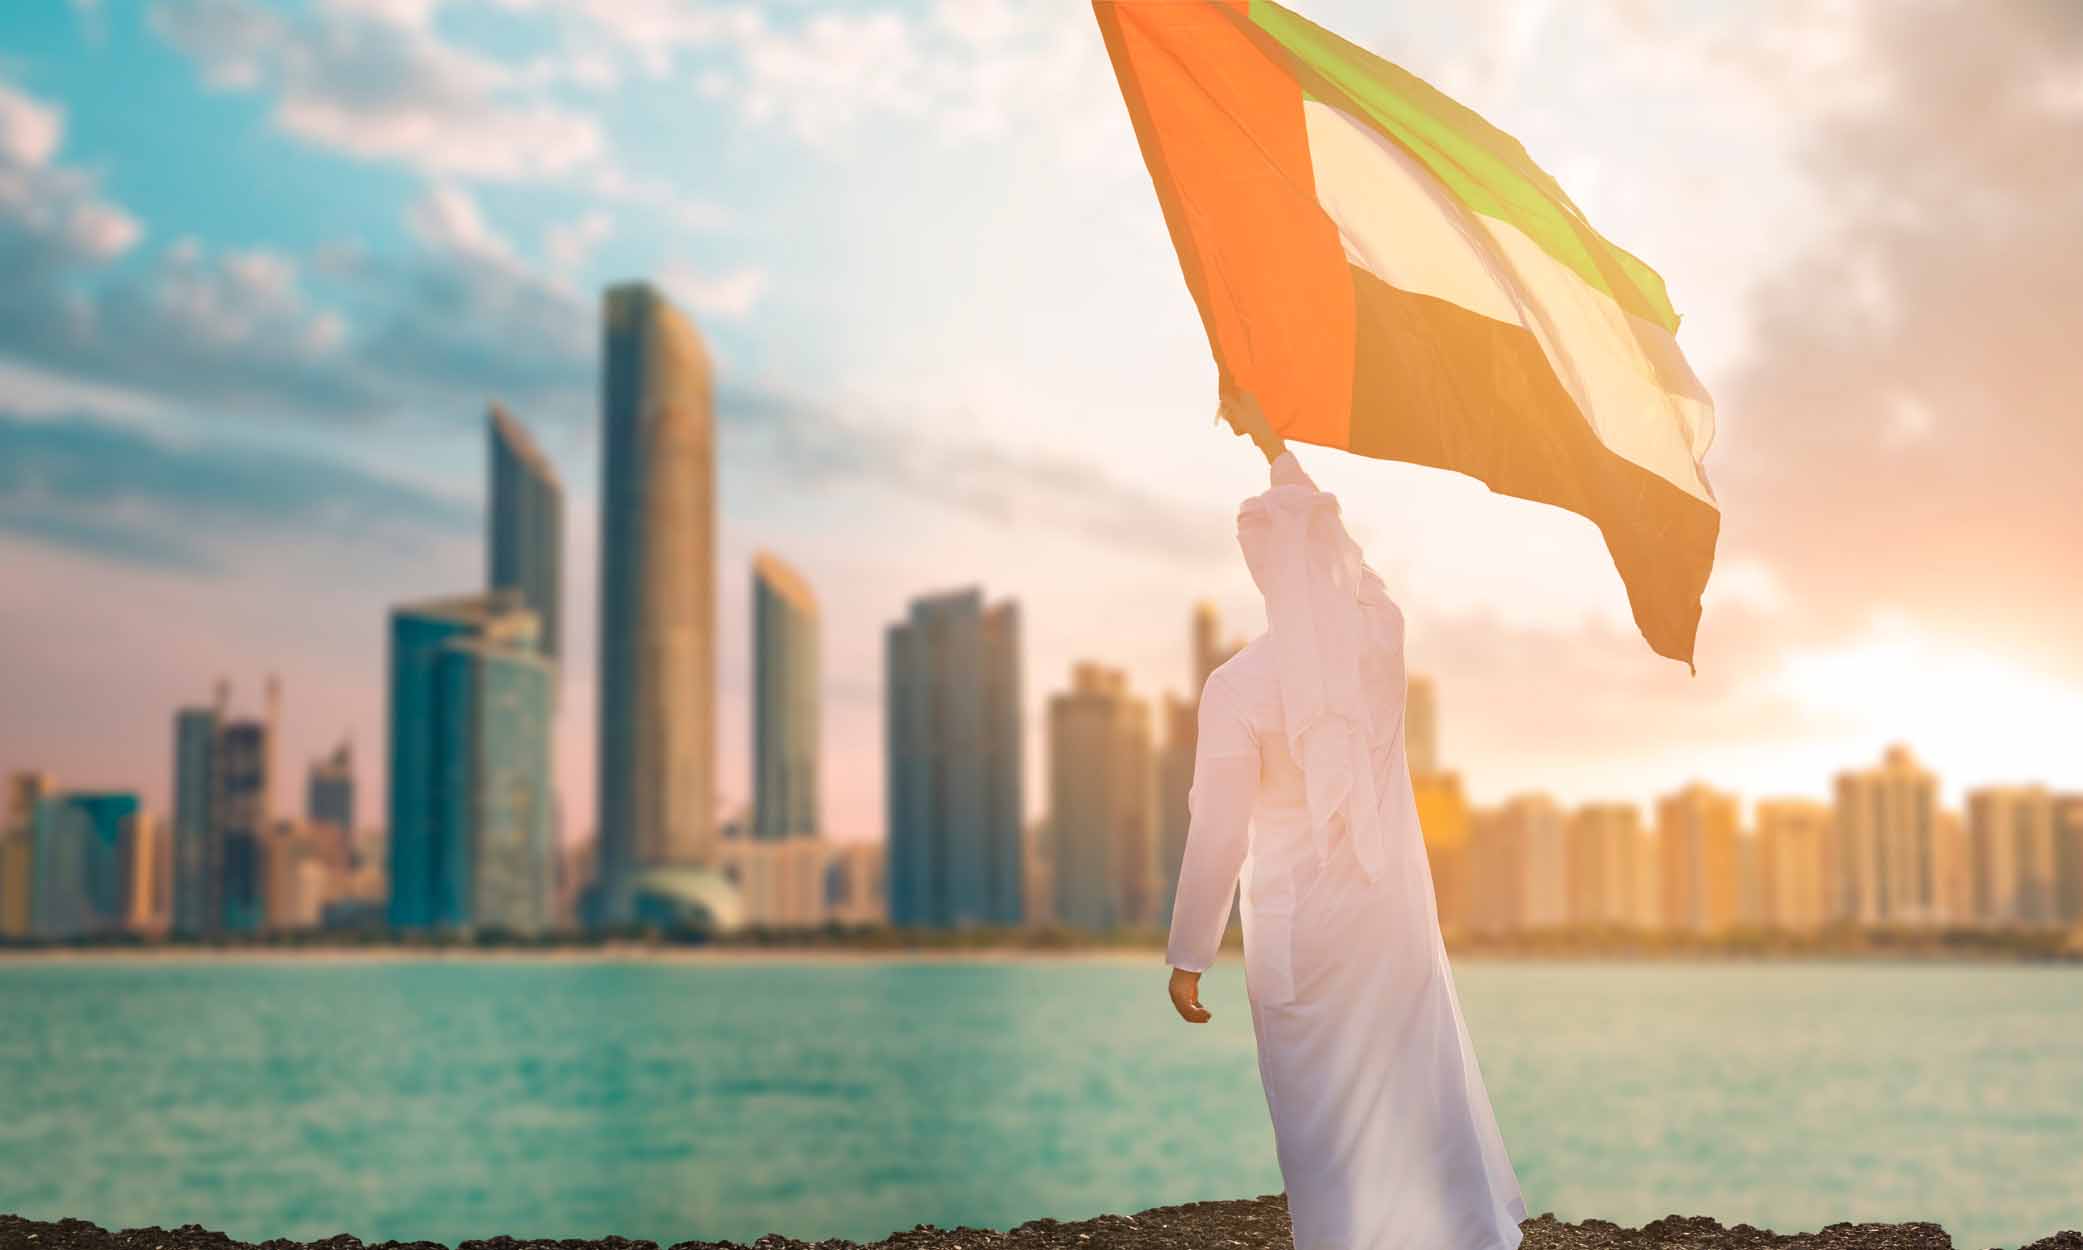 Os Emirados Árabes Unidos são o passaporte mais poderoso do mundo.